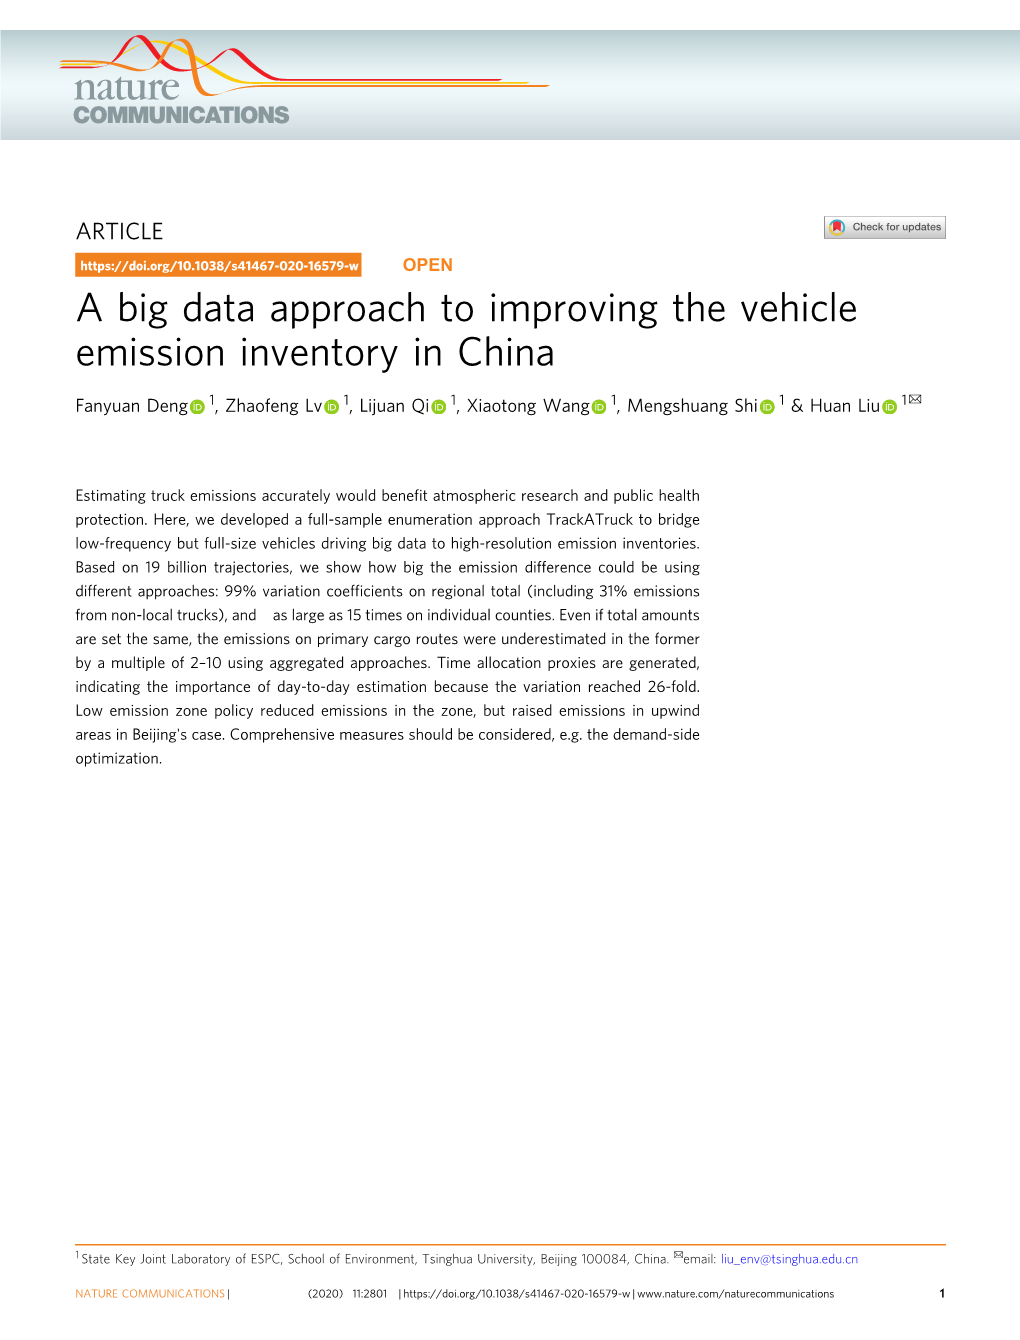 A Big Data Approach to Improving the Vehicle Emission Inventory in China ✉ Fanyuan Deng 1, Zhaofeng Lv 1, Lijuan Qi 1, Xiaotong Wang 1, Mengshuang Shi 1 & Huan Liu 1